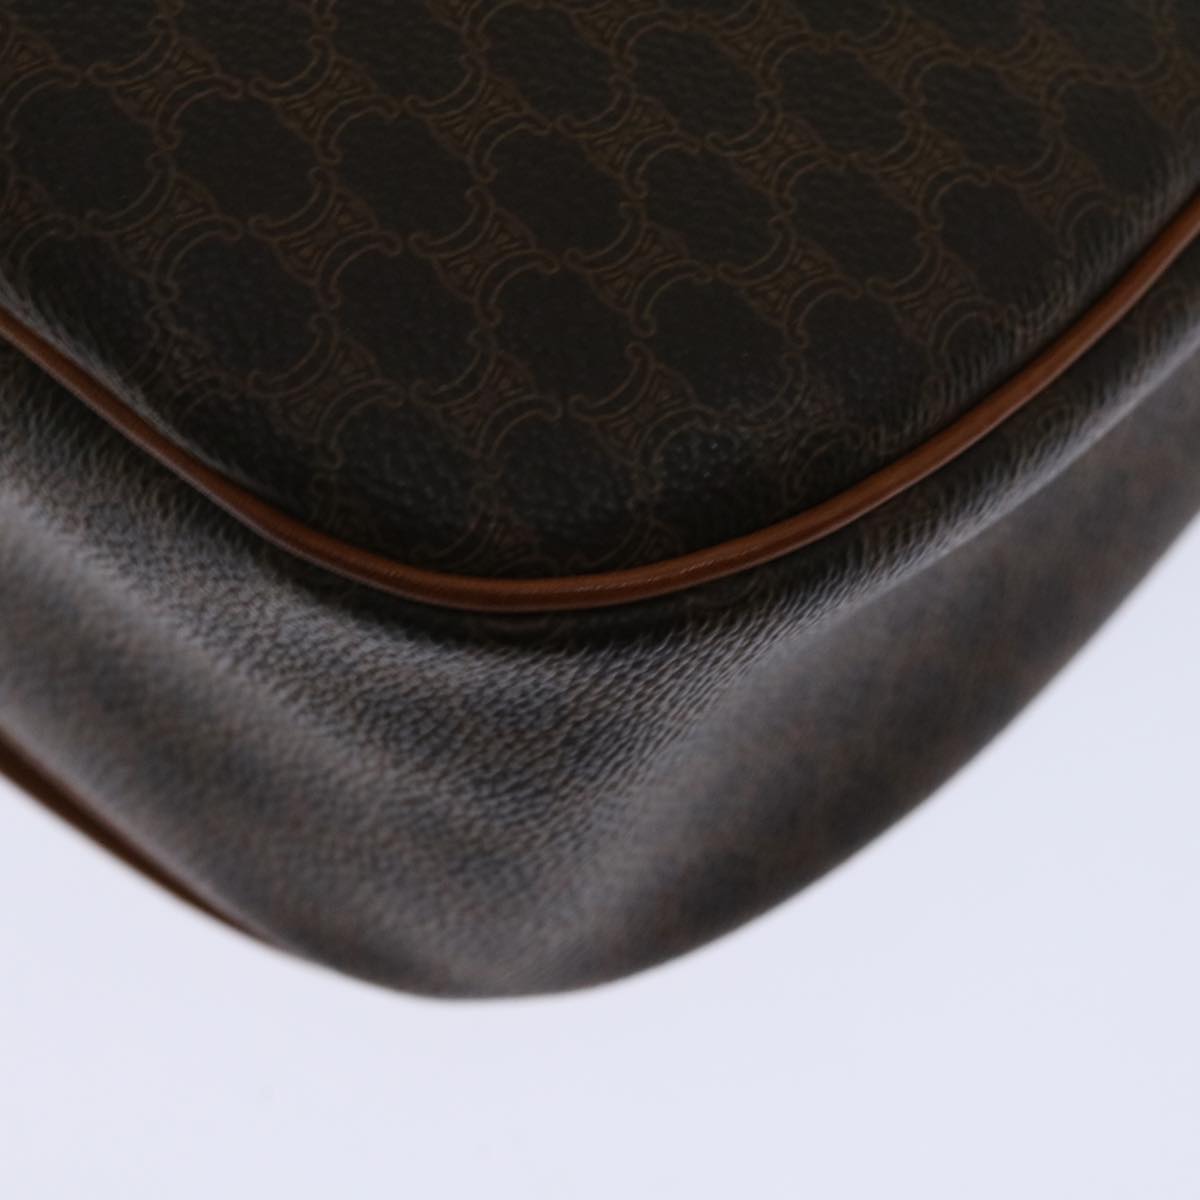 CELINE Macadam Canvas Shoulder Bag PVC Leather Brown Auth ki4098